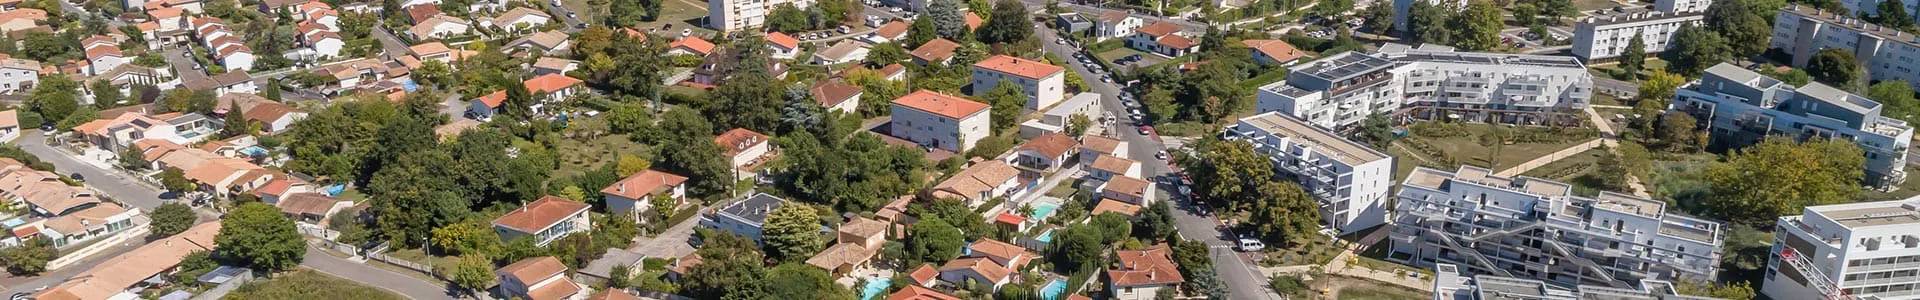 Vue aérienne du quartier autour de la résidence Isatis